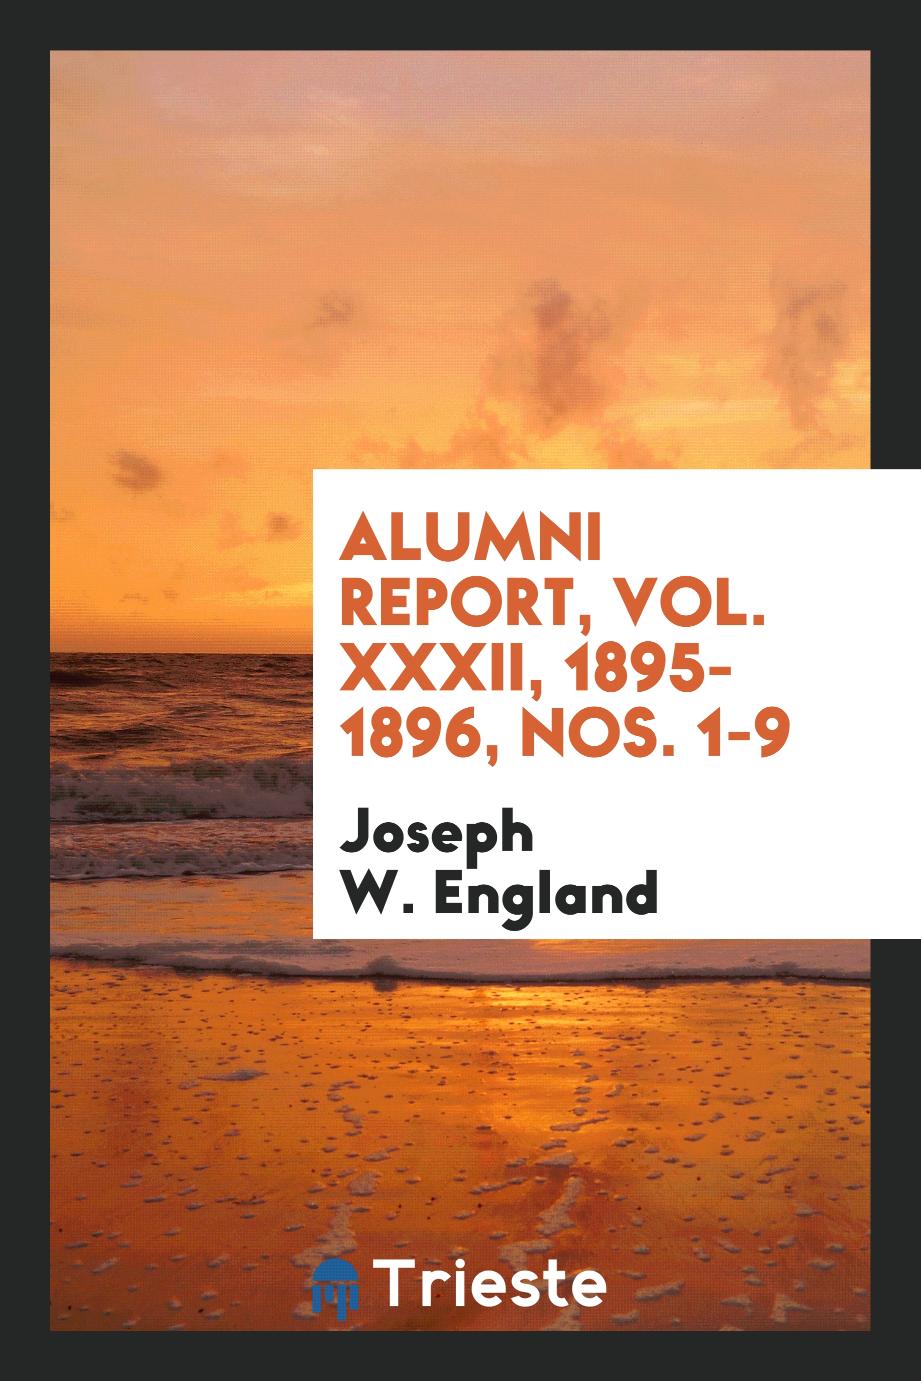 Alumni Report, Vol. XXXII, 1895-1896, Nos. 1-9